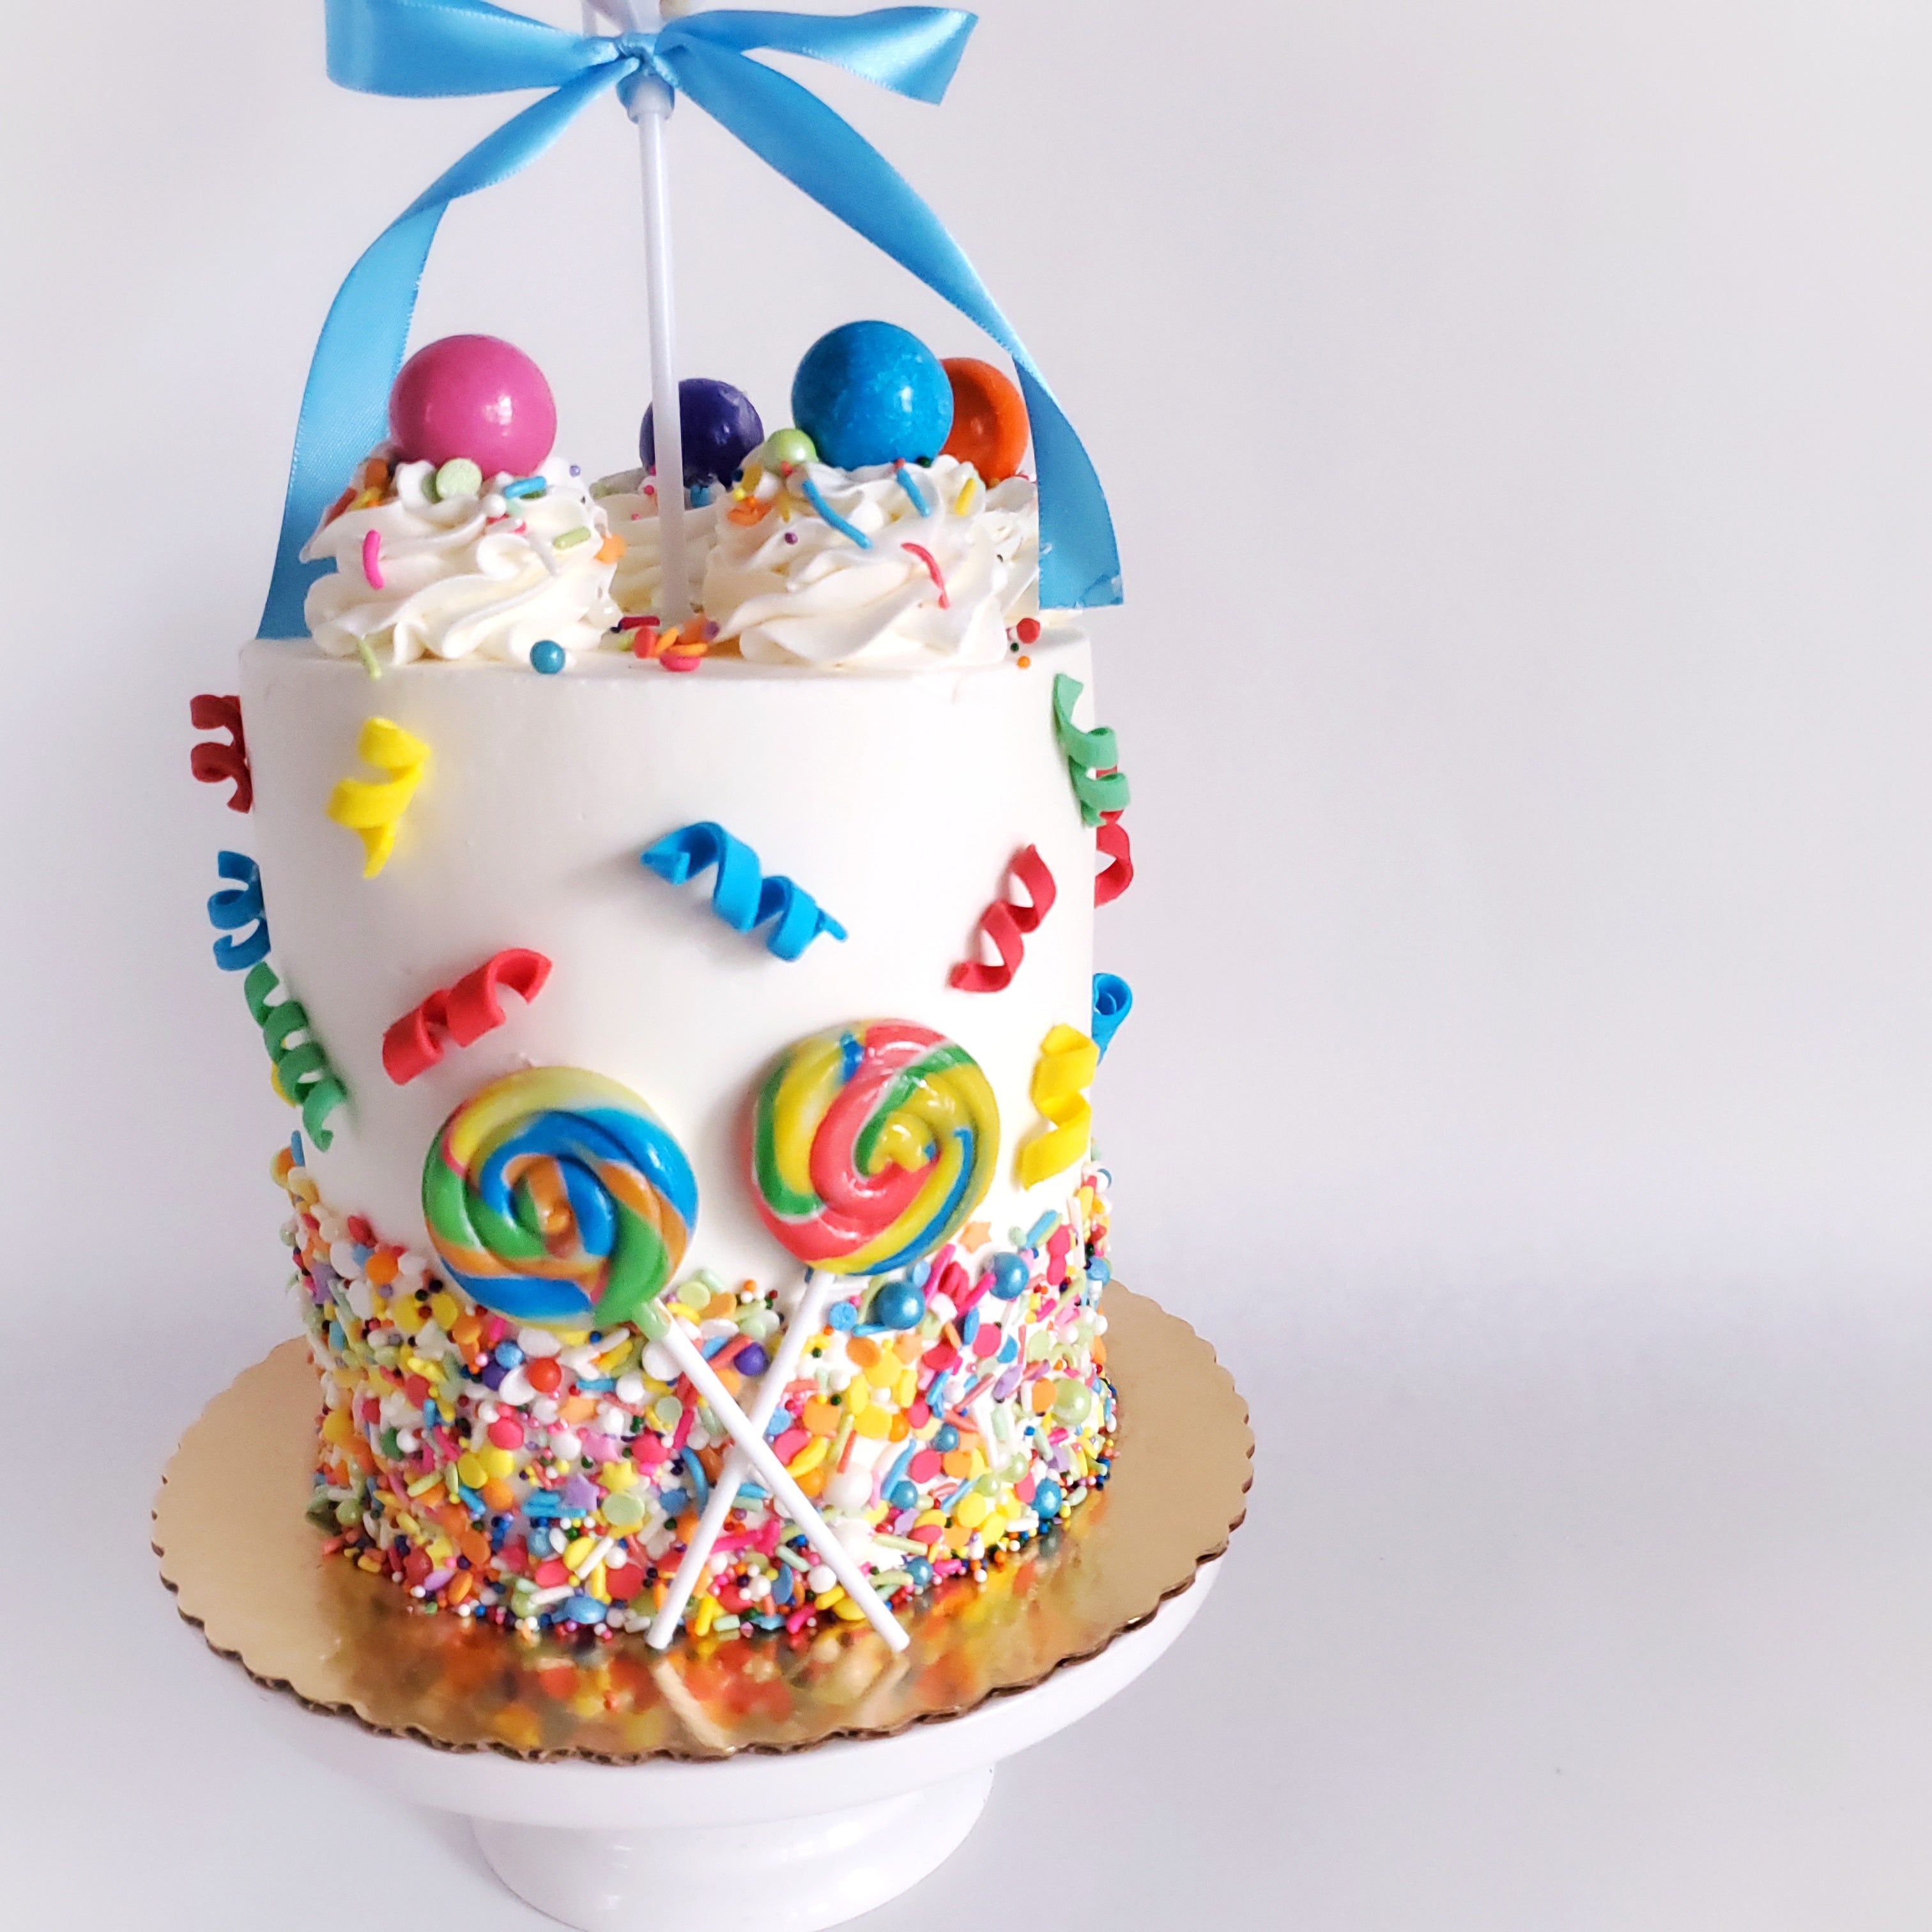 Pillsbury™ Birthday Cake Cookie Dough Poppins - Pillsbury.com